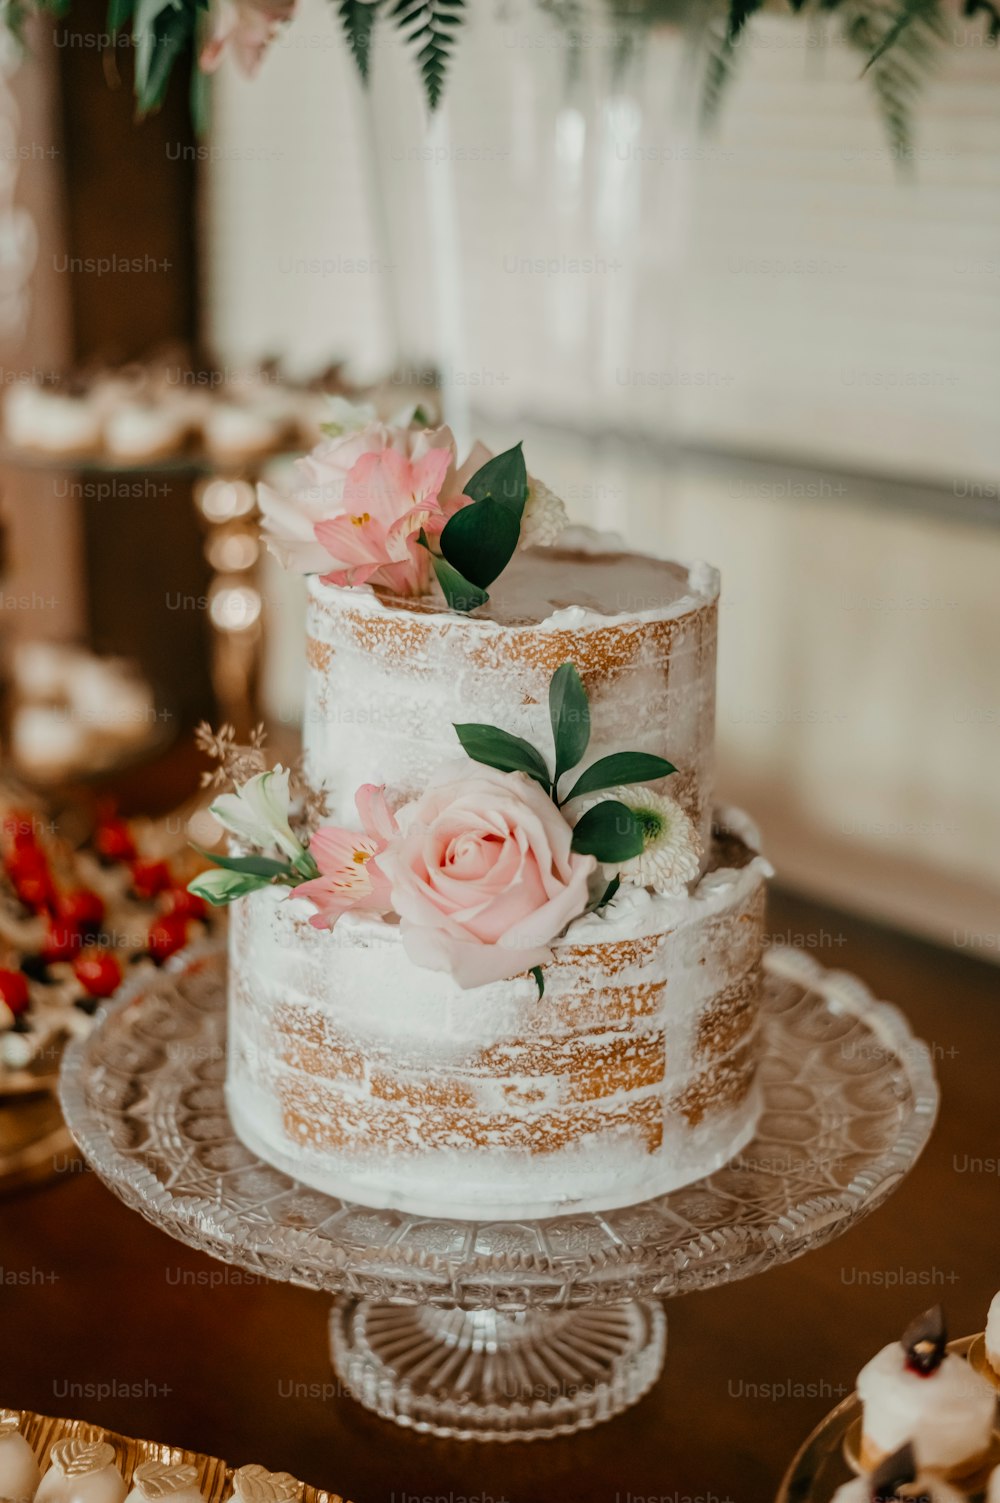 그 위에 꽃이 달린 웨딩 케이크